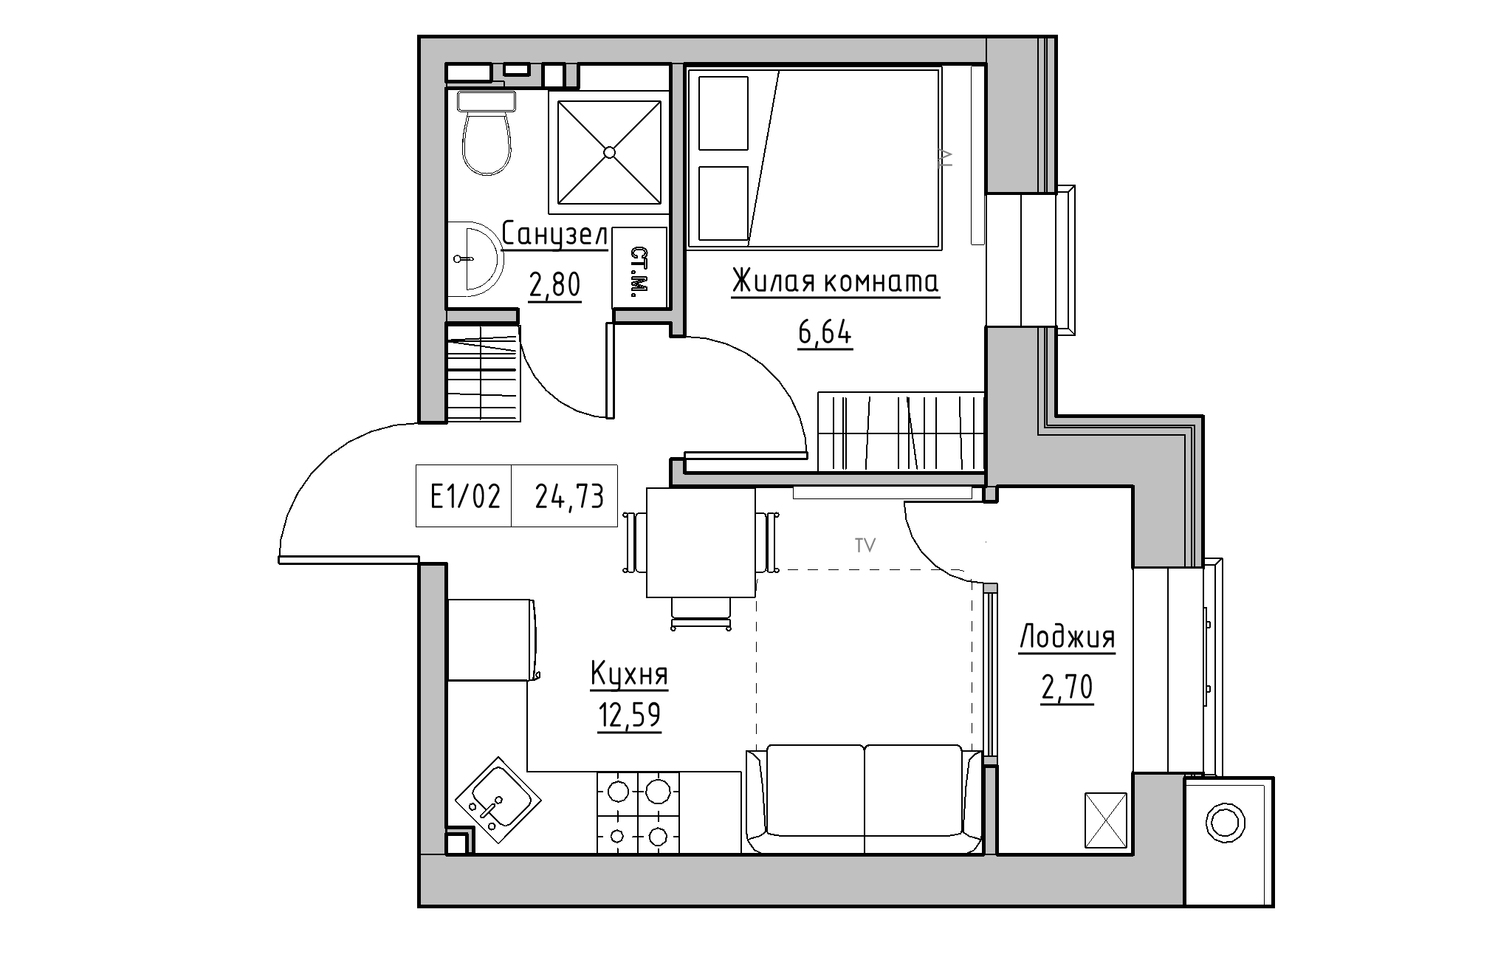 Планировка 1-к квартира площей 24.73м2, KS-013-04/0001.